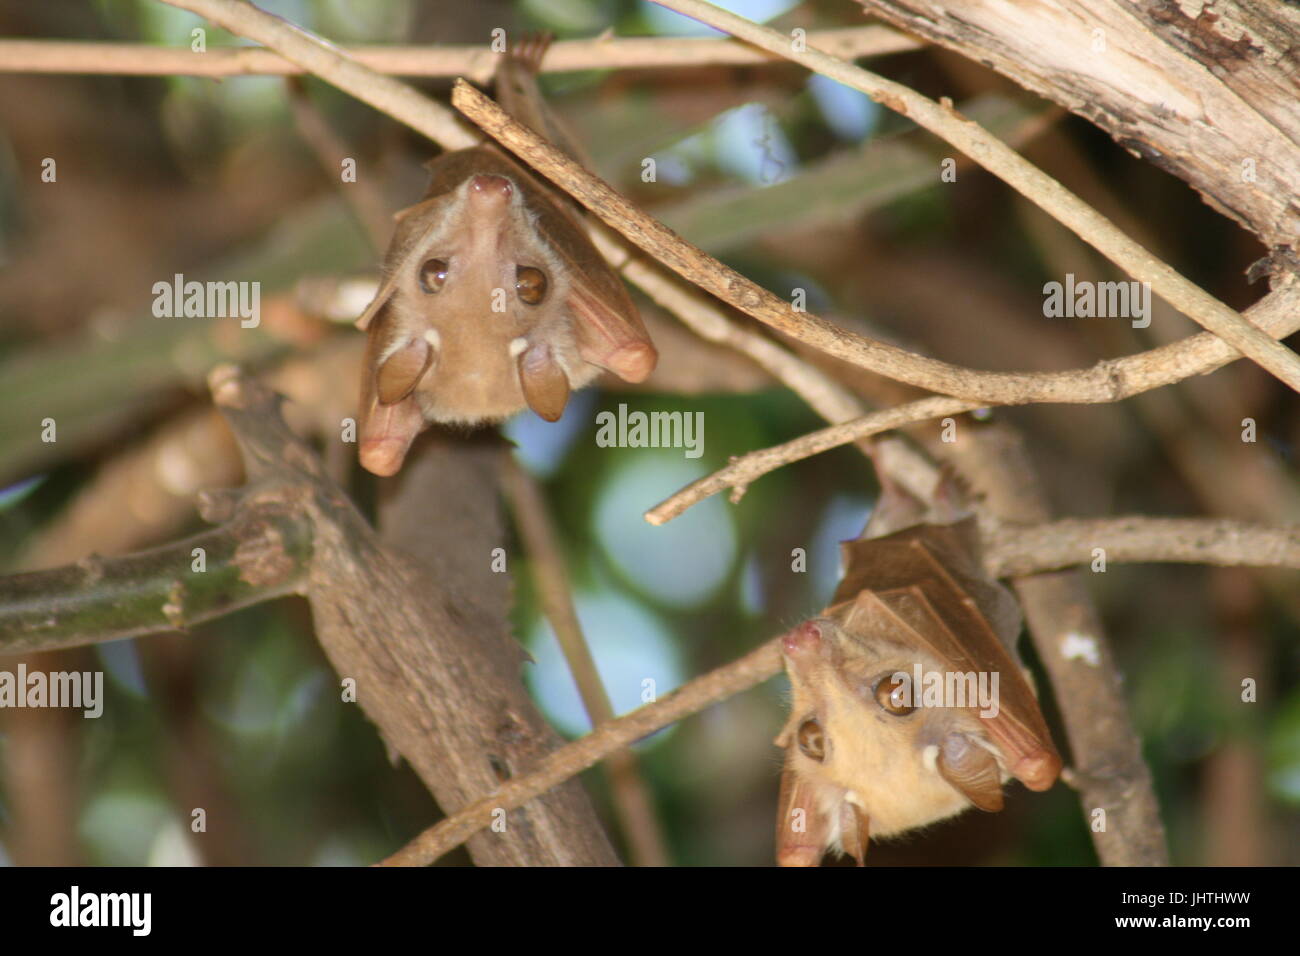 Epomophorus wahlbergi, Wahlberg's epauletted fruit bat, fruit bat, bat, Stock Photo